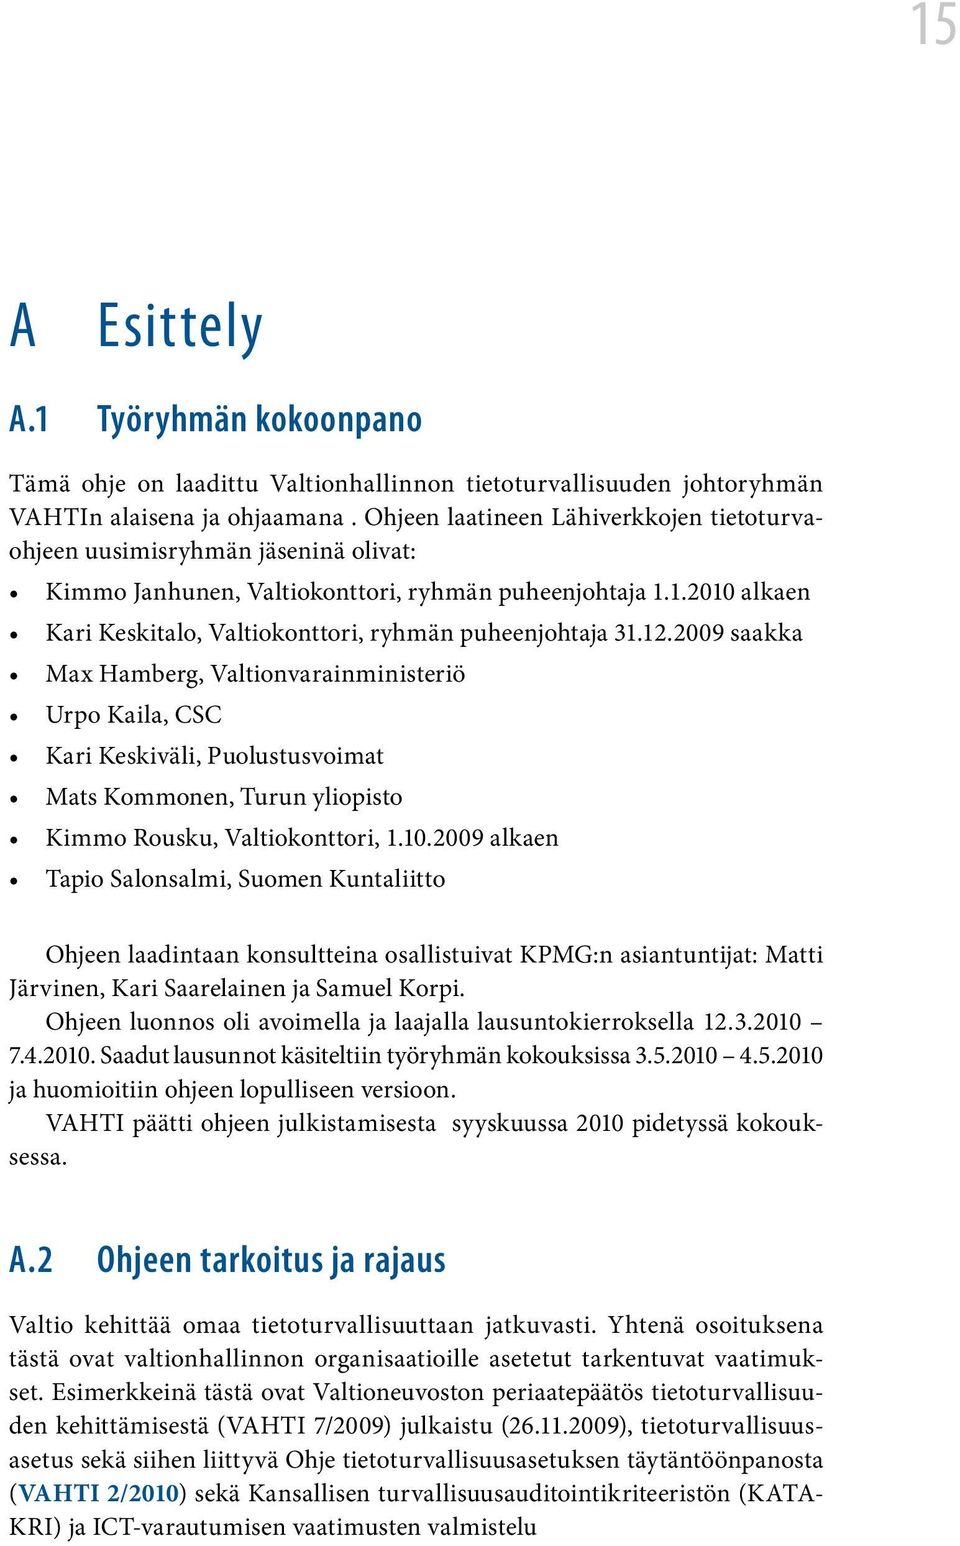 1.2010 alkaen Kari Keskitalo, Valtiokonttori, ryhmän puheenjohtaja 31.12.